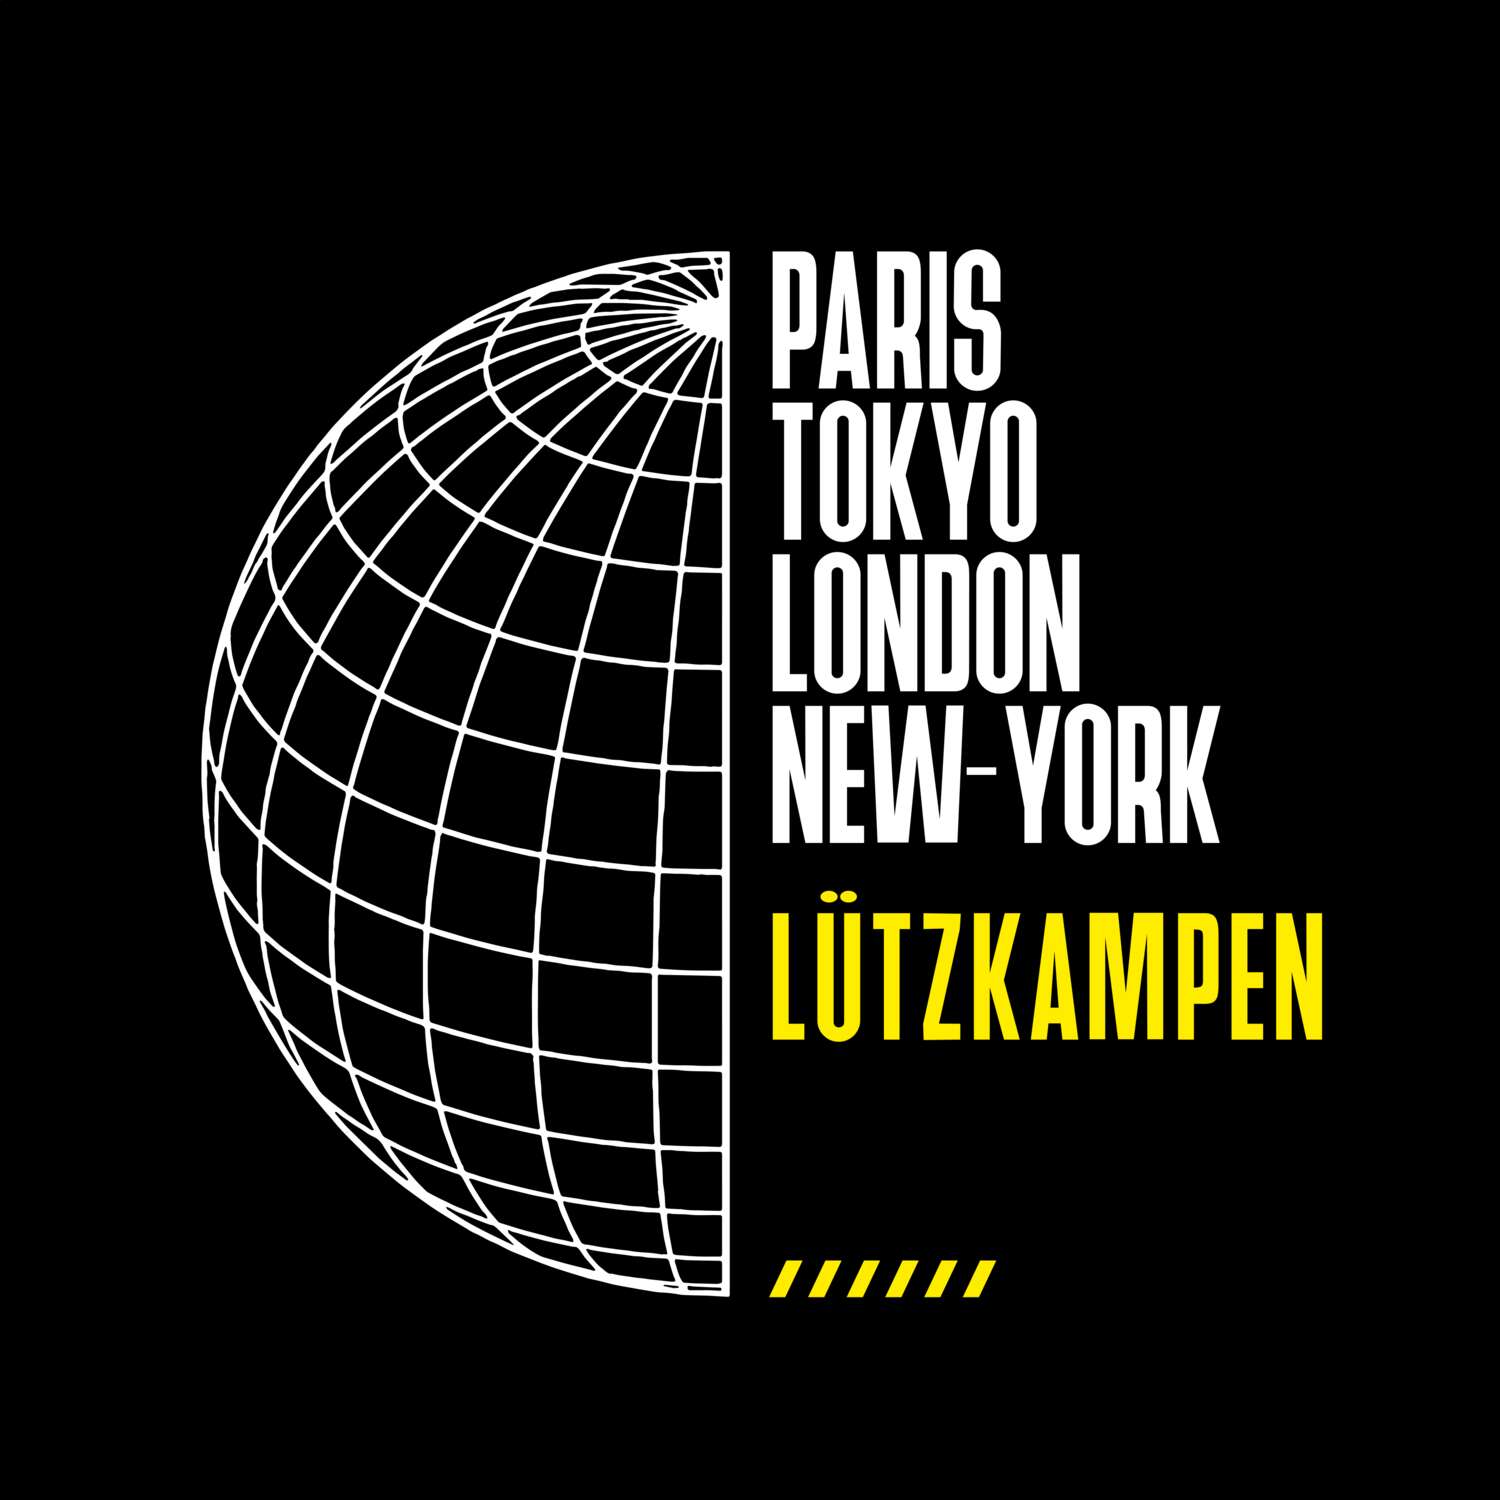 Lützkampen T-Shirt »Paris Tokyo London«